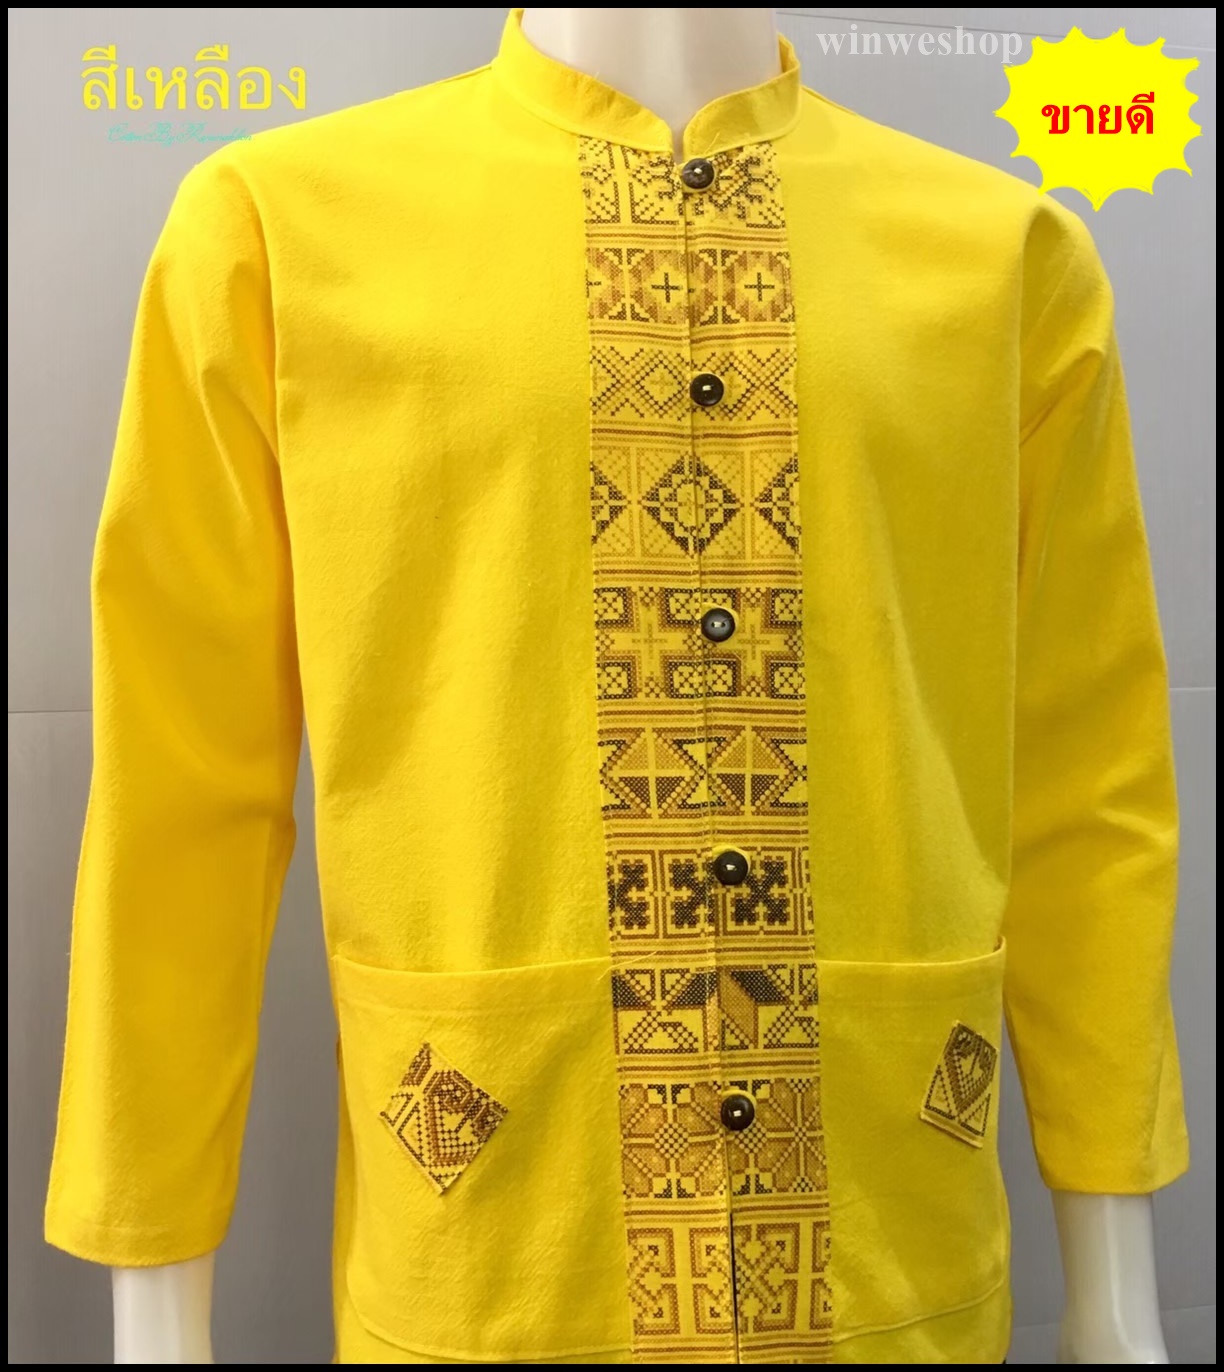 เสื้อผ้าฝ้ายคอจีน-แขนยาว-สีเหลือง#เสื้อผ้าผู้ชาย #ชุดประจำชาติ #เสื้อพื้นเมืองผู้ชาย #ชุดอีสาน #ผ้าฝ้ายเรณู #ผ้าฝ้ายเรณูนคร #ชุดอีสาน #ชุดพื้นเมือง #ชุดไทย #ชุดงานมงคล #ชุดไปวัด #ชุดไปงานแต่ง #ชุดงานพิธีการ #ชุดทำงาน